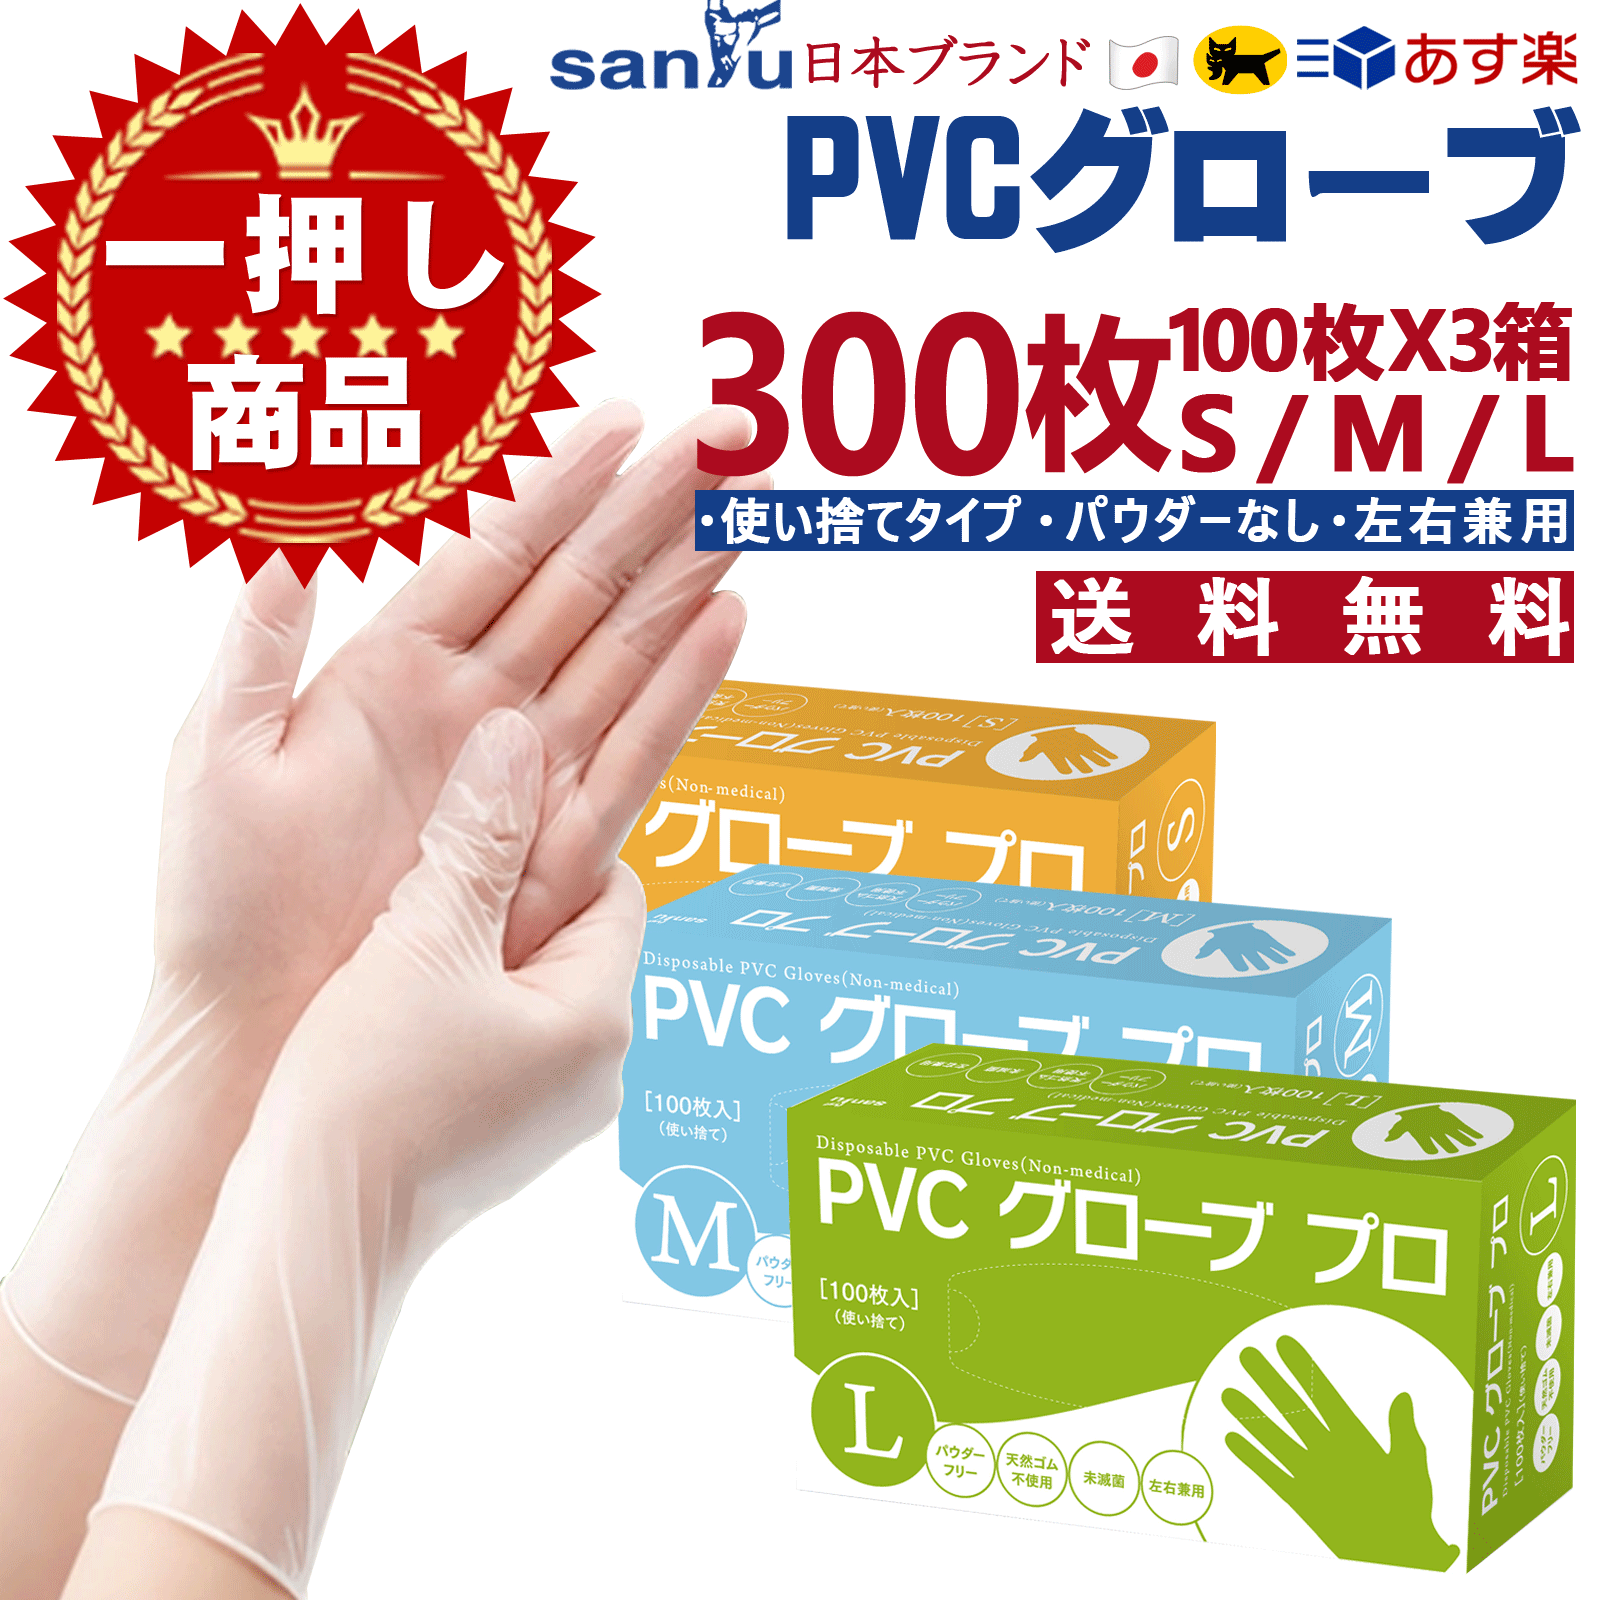 PVC手袋 PVCグローブ 100枚 ×3箱 300枚 